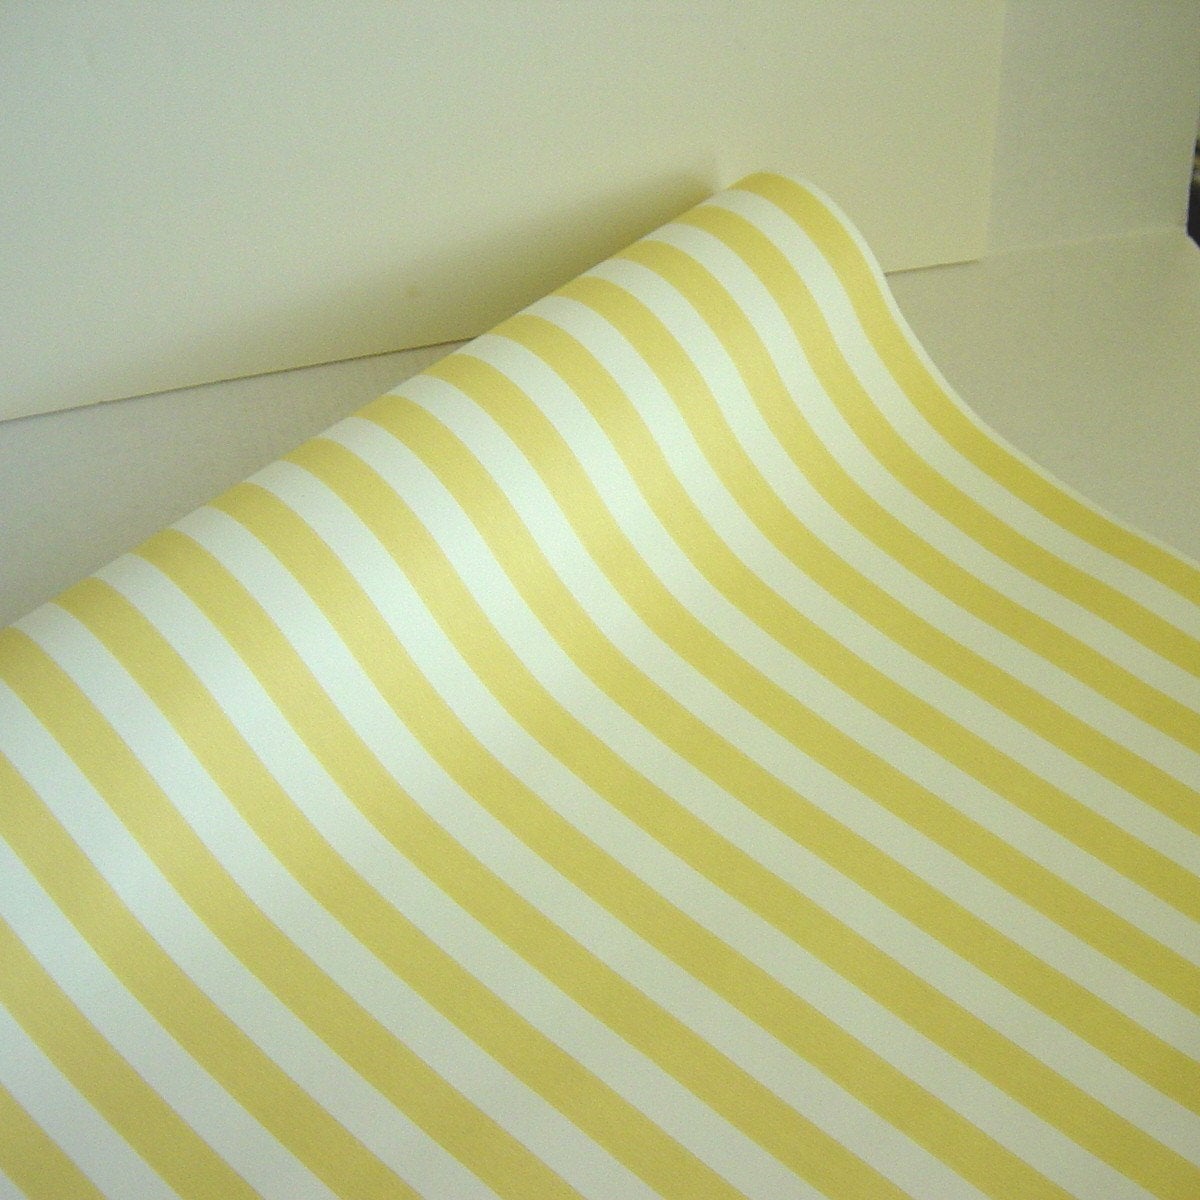 노란색과 흰색 벽지,노랑,직물,선,침대 시트,린넨